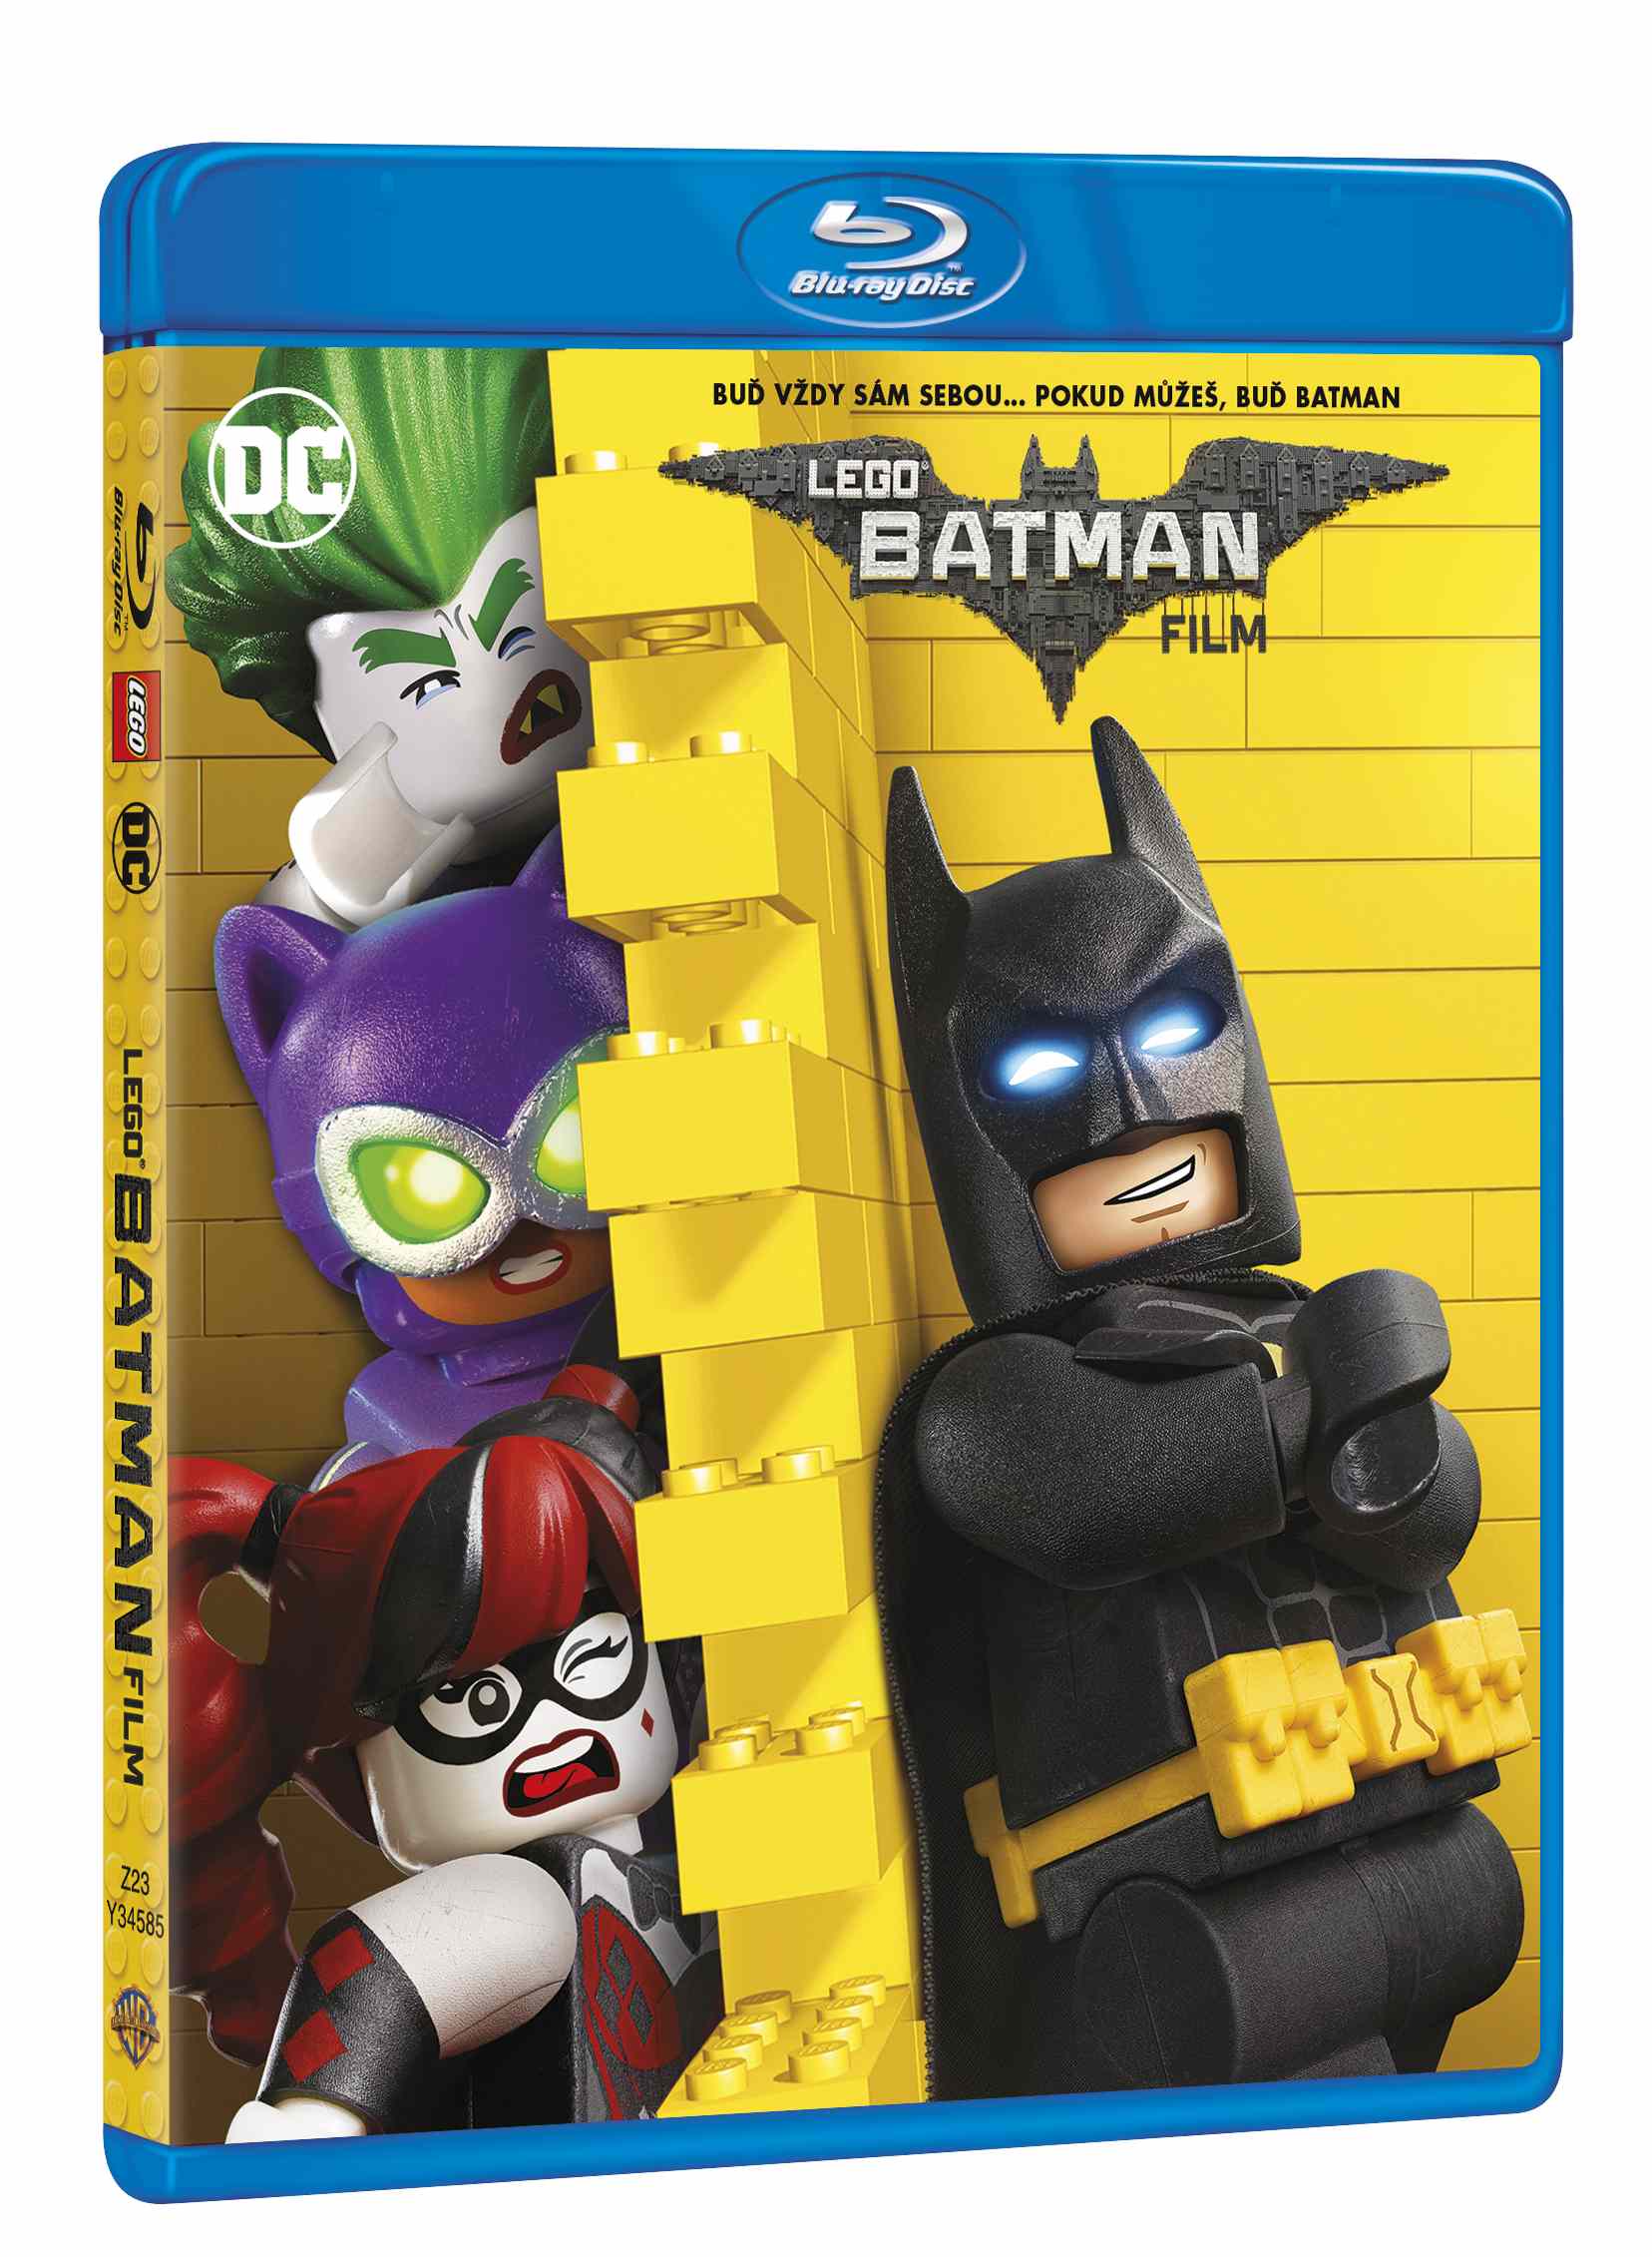 LEGO Batman film - Blu-ray